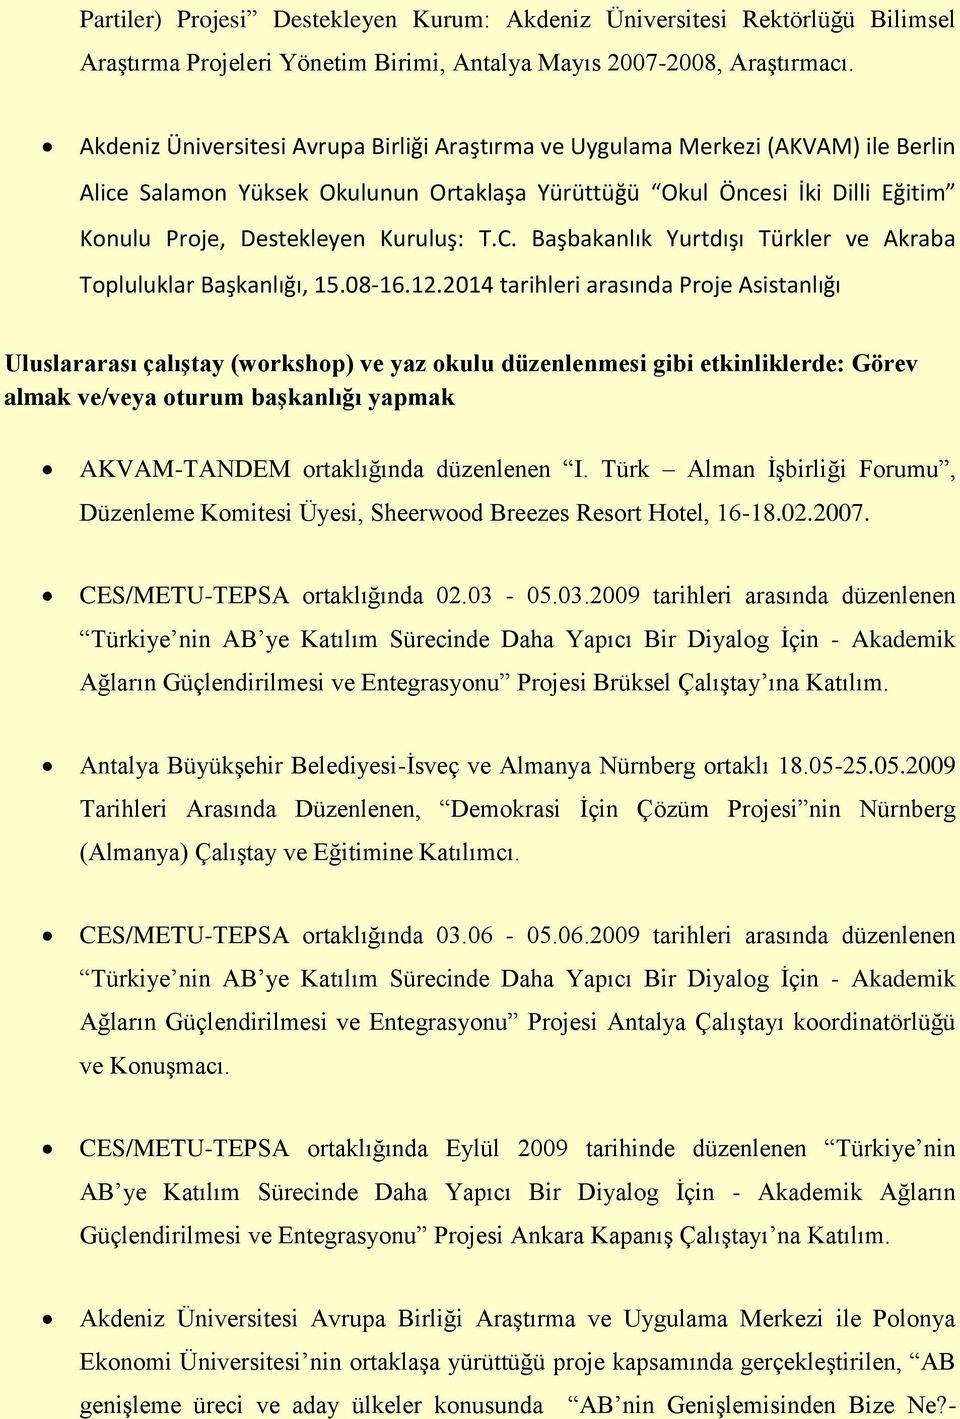 T.C. Başbakanlık Yurtdışı Türkler ve Akraba Topluluklar Başkanlığı, 15.08-16.12.